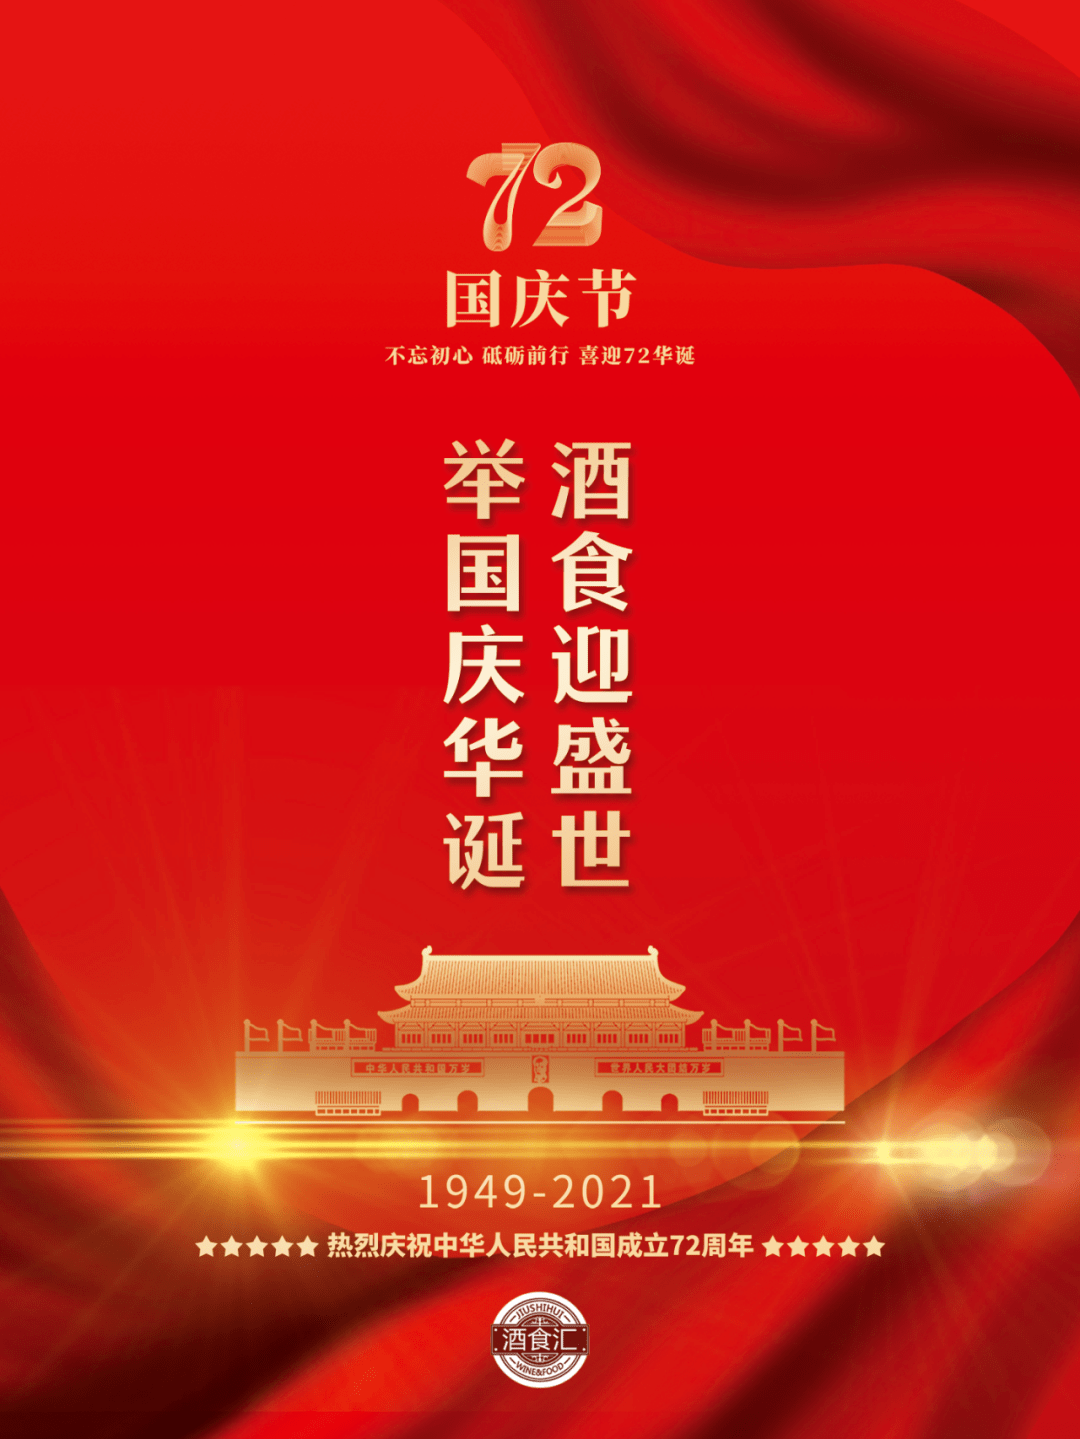 酒食迎盛世,举国庆华诞!热烈庆祝中华人民共和国成立72周年!